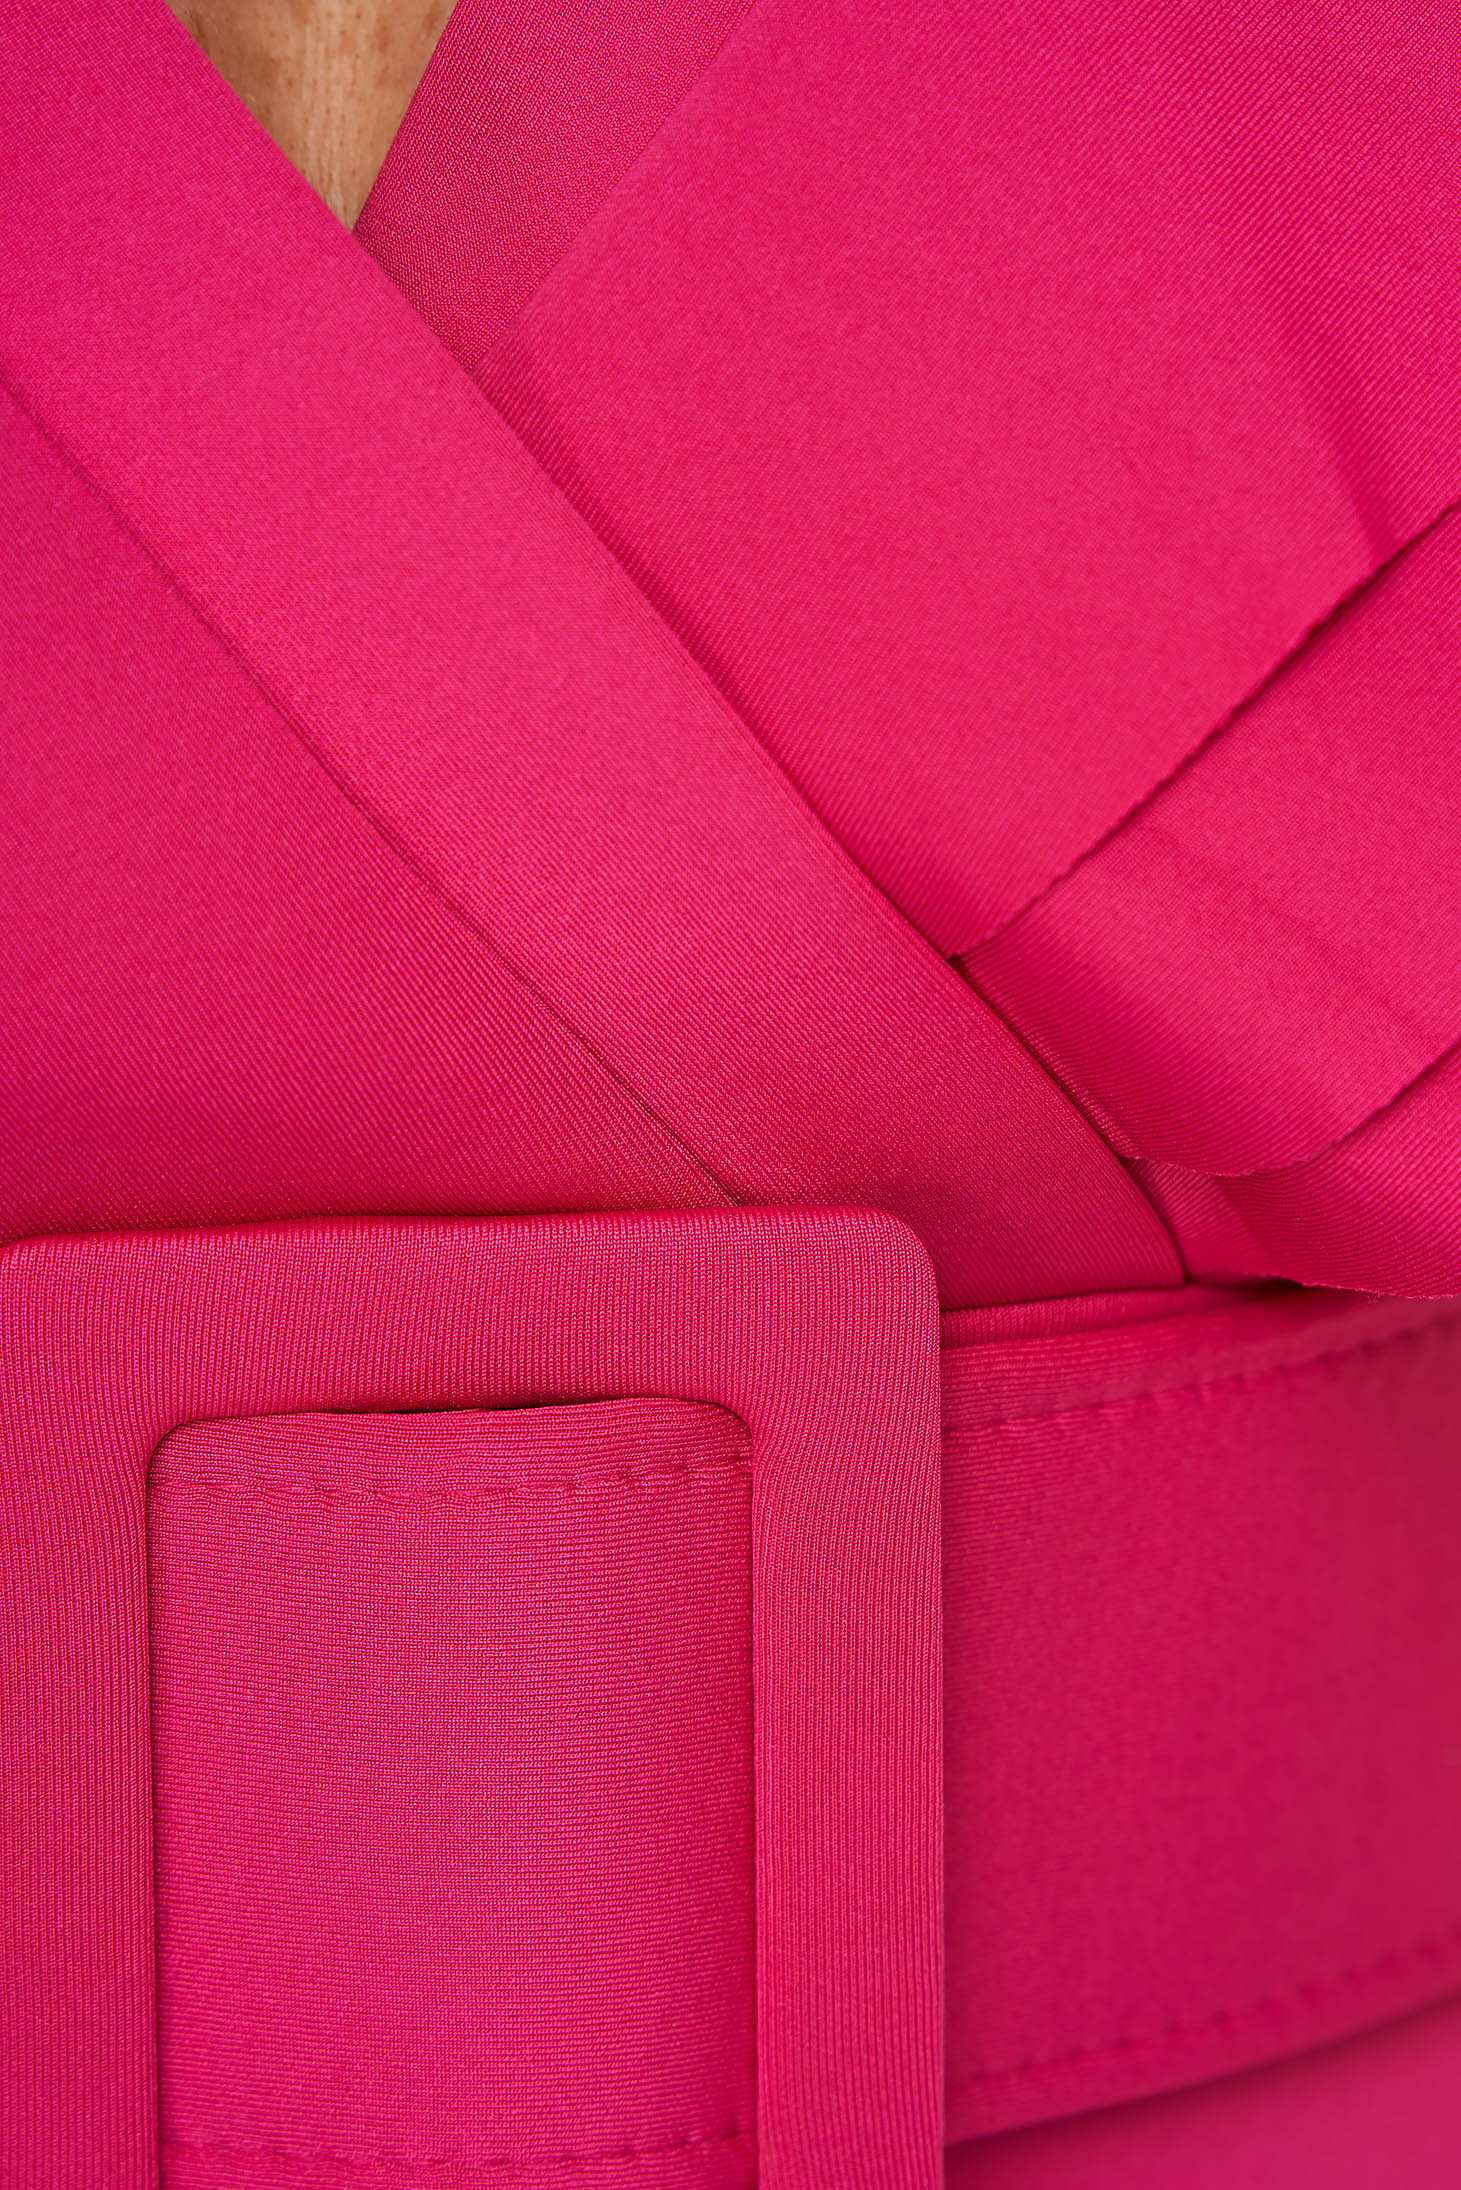 Pink ceruza ruha öv típusú kiegészítővel fodros ujjakkal 6 - StarShinerS.hu